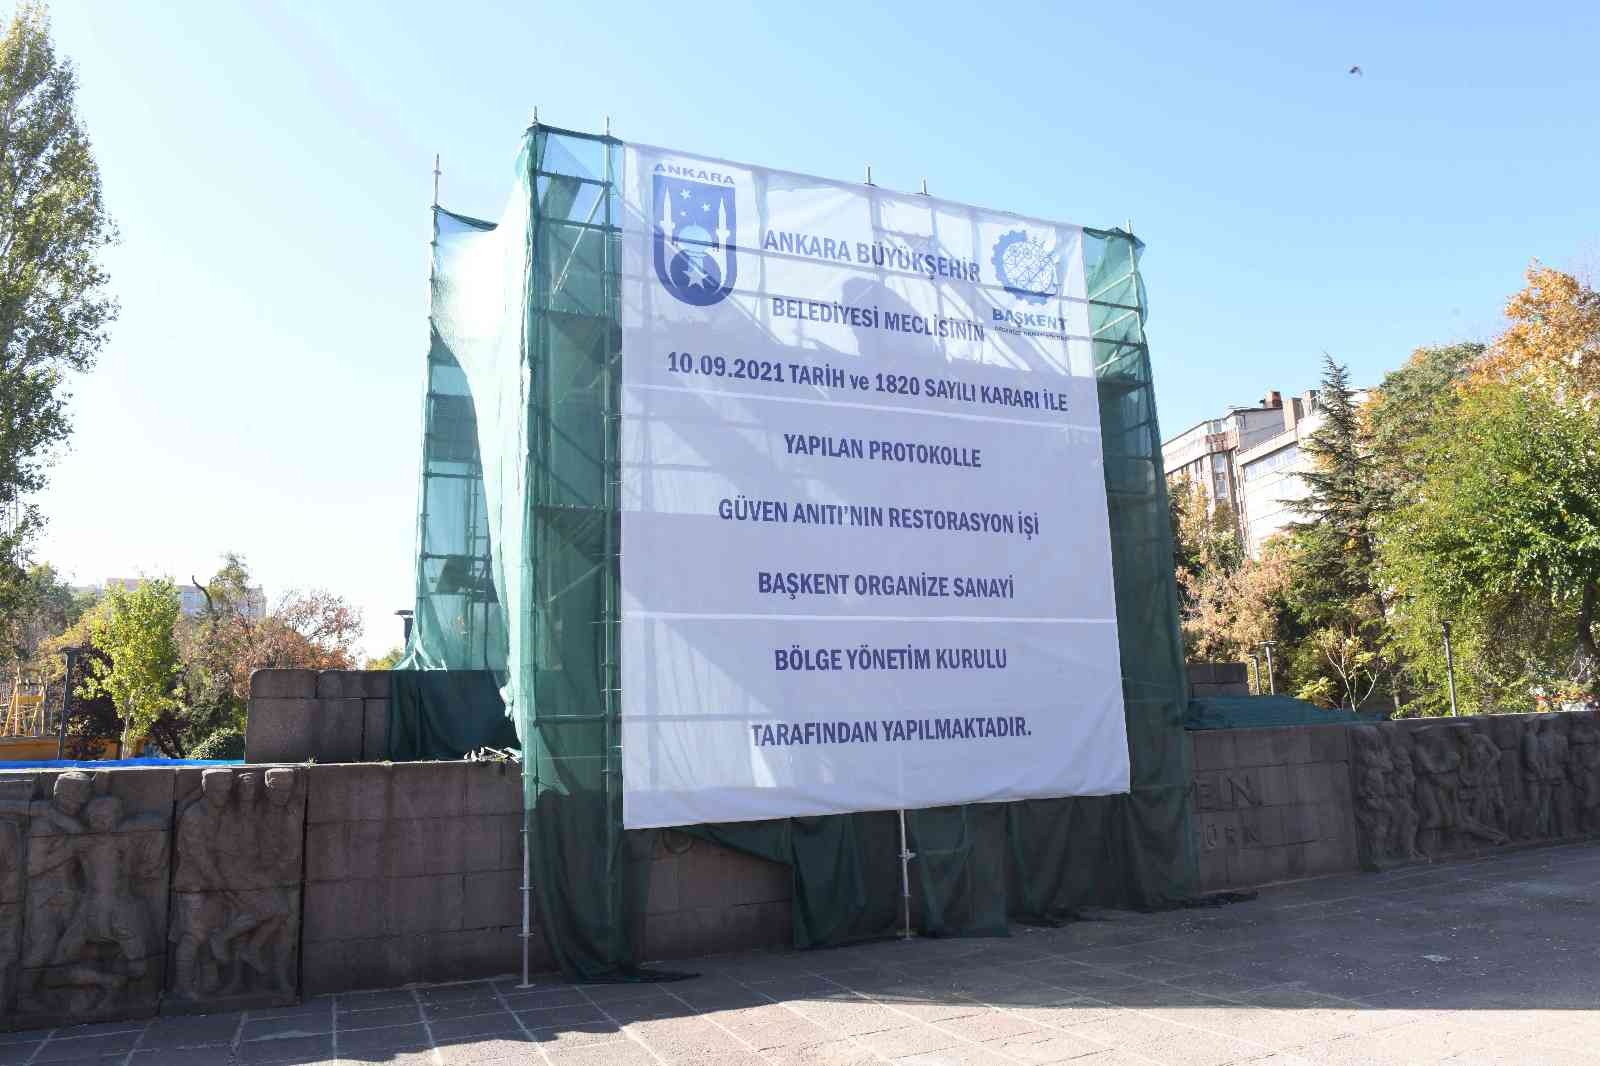 Kızılay Güven Anıtı’nın restorasyonu için düğmeye basıldı